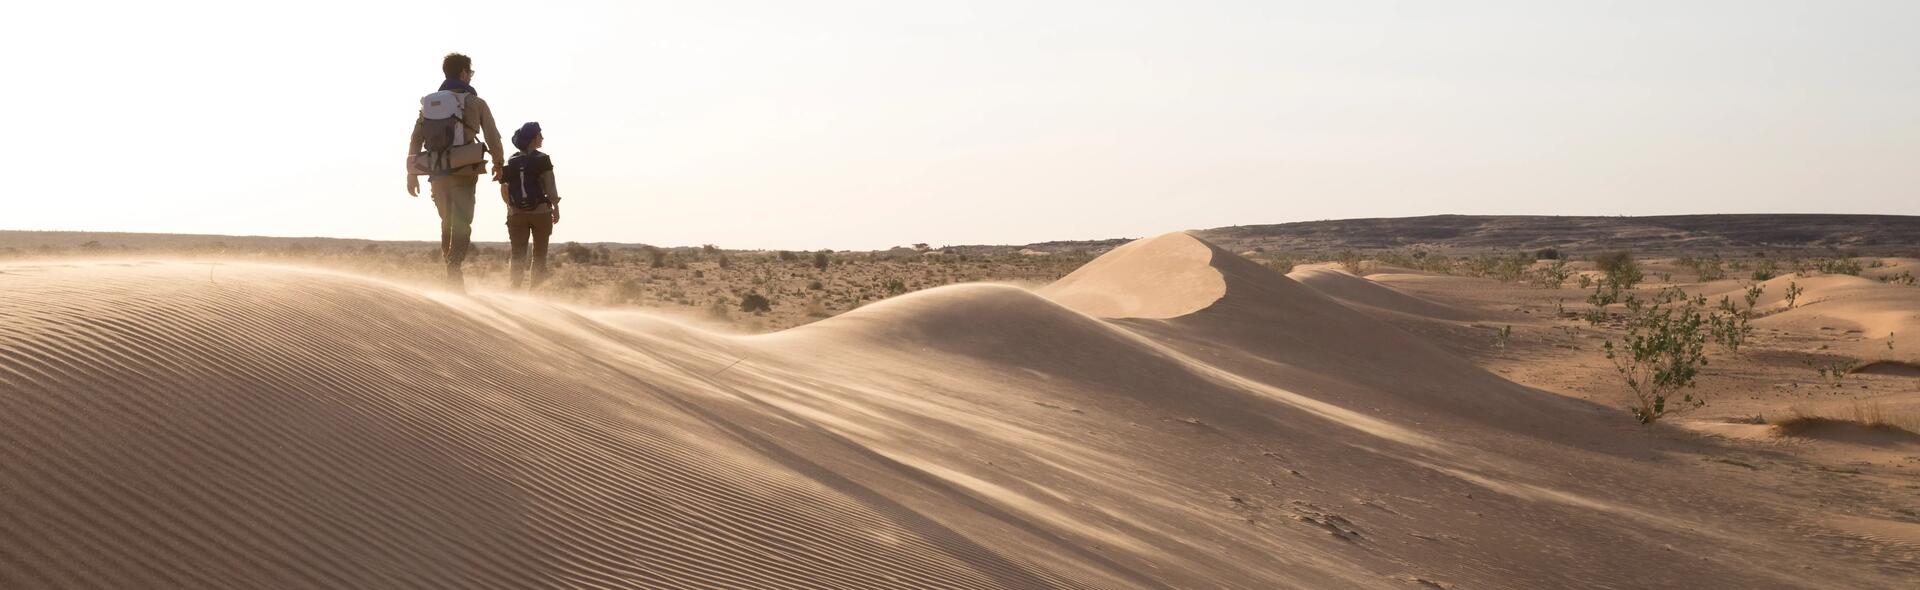 Trekkeurs marchant sur une dune de sable dans le desert